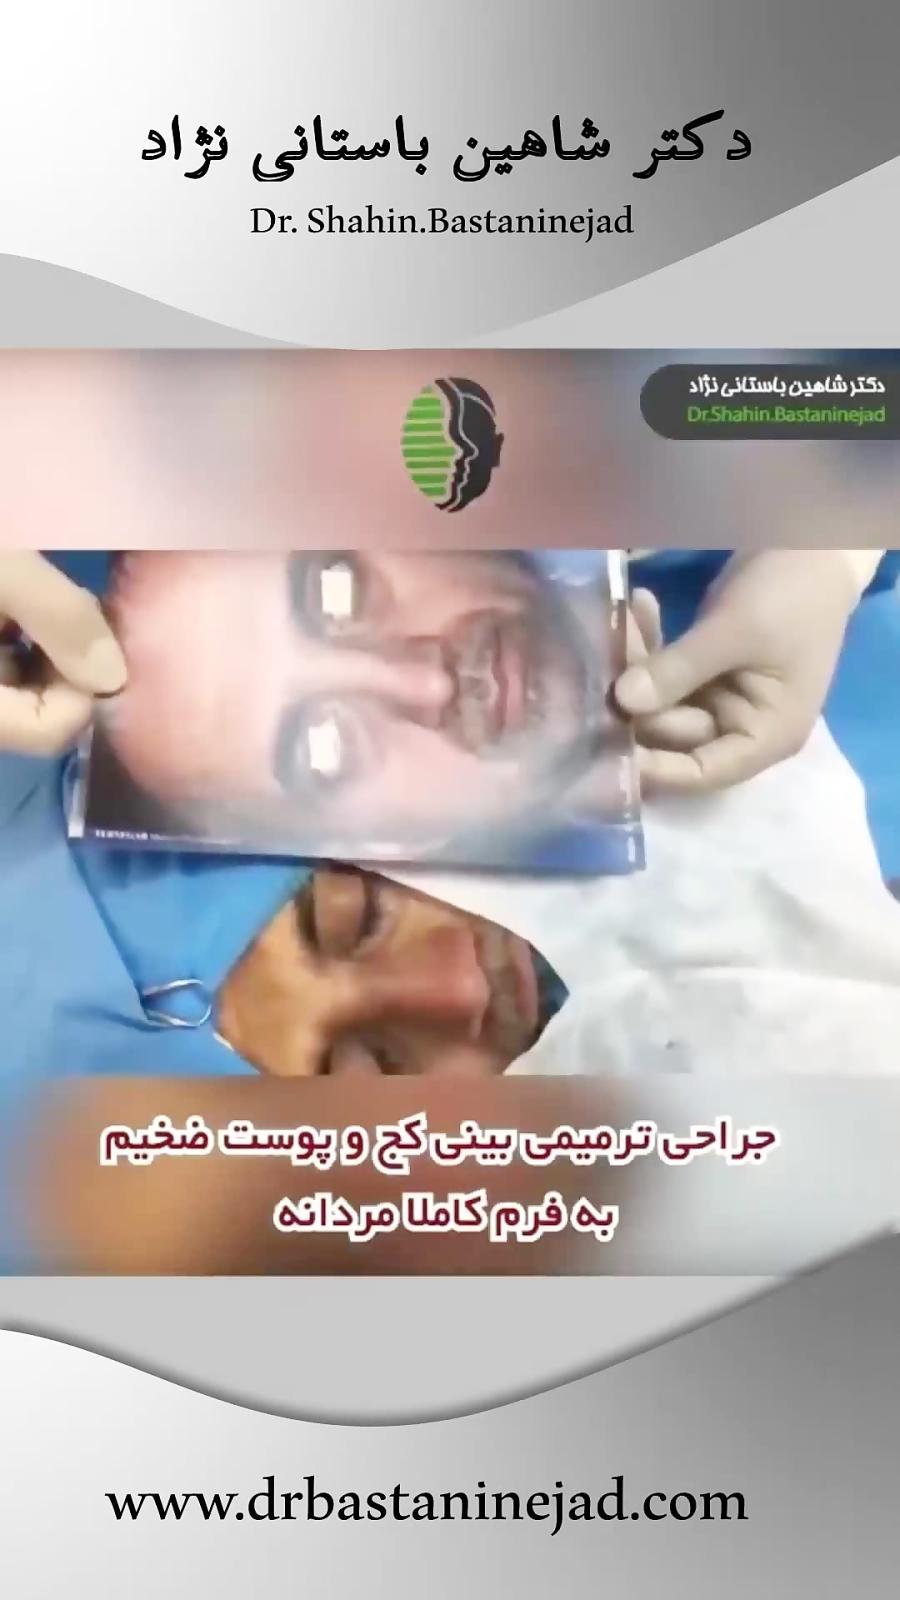 نمونه های جراحی ترمیمی بینی  دکتر شاهین باستانی نژاد بهترین جراح بینی تهران